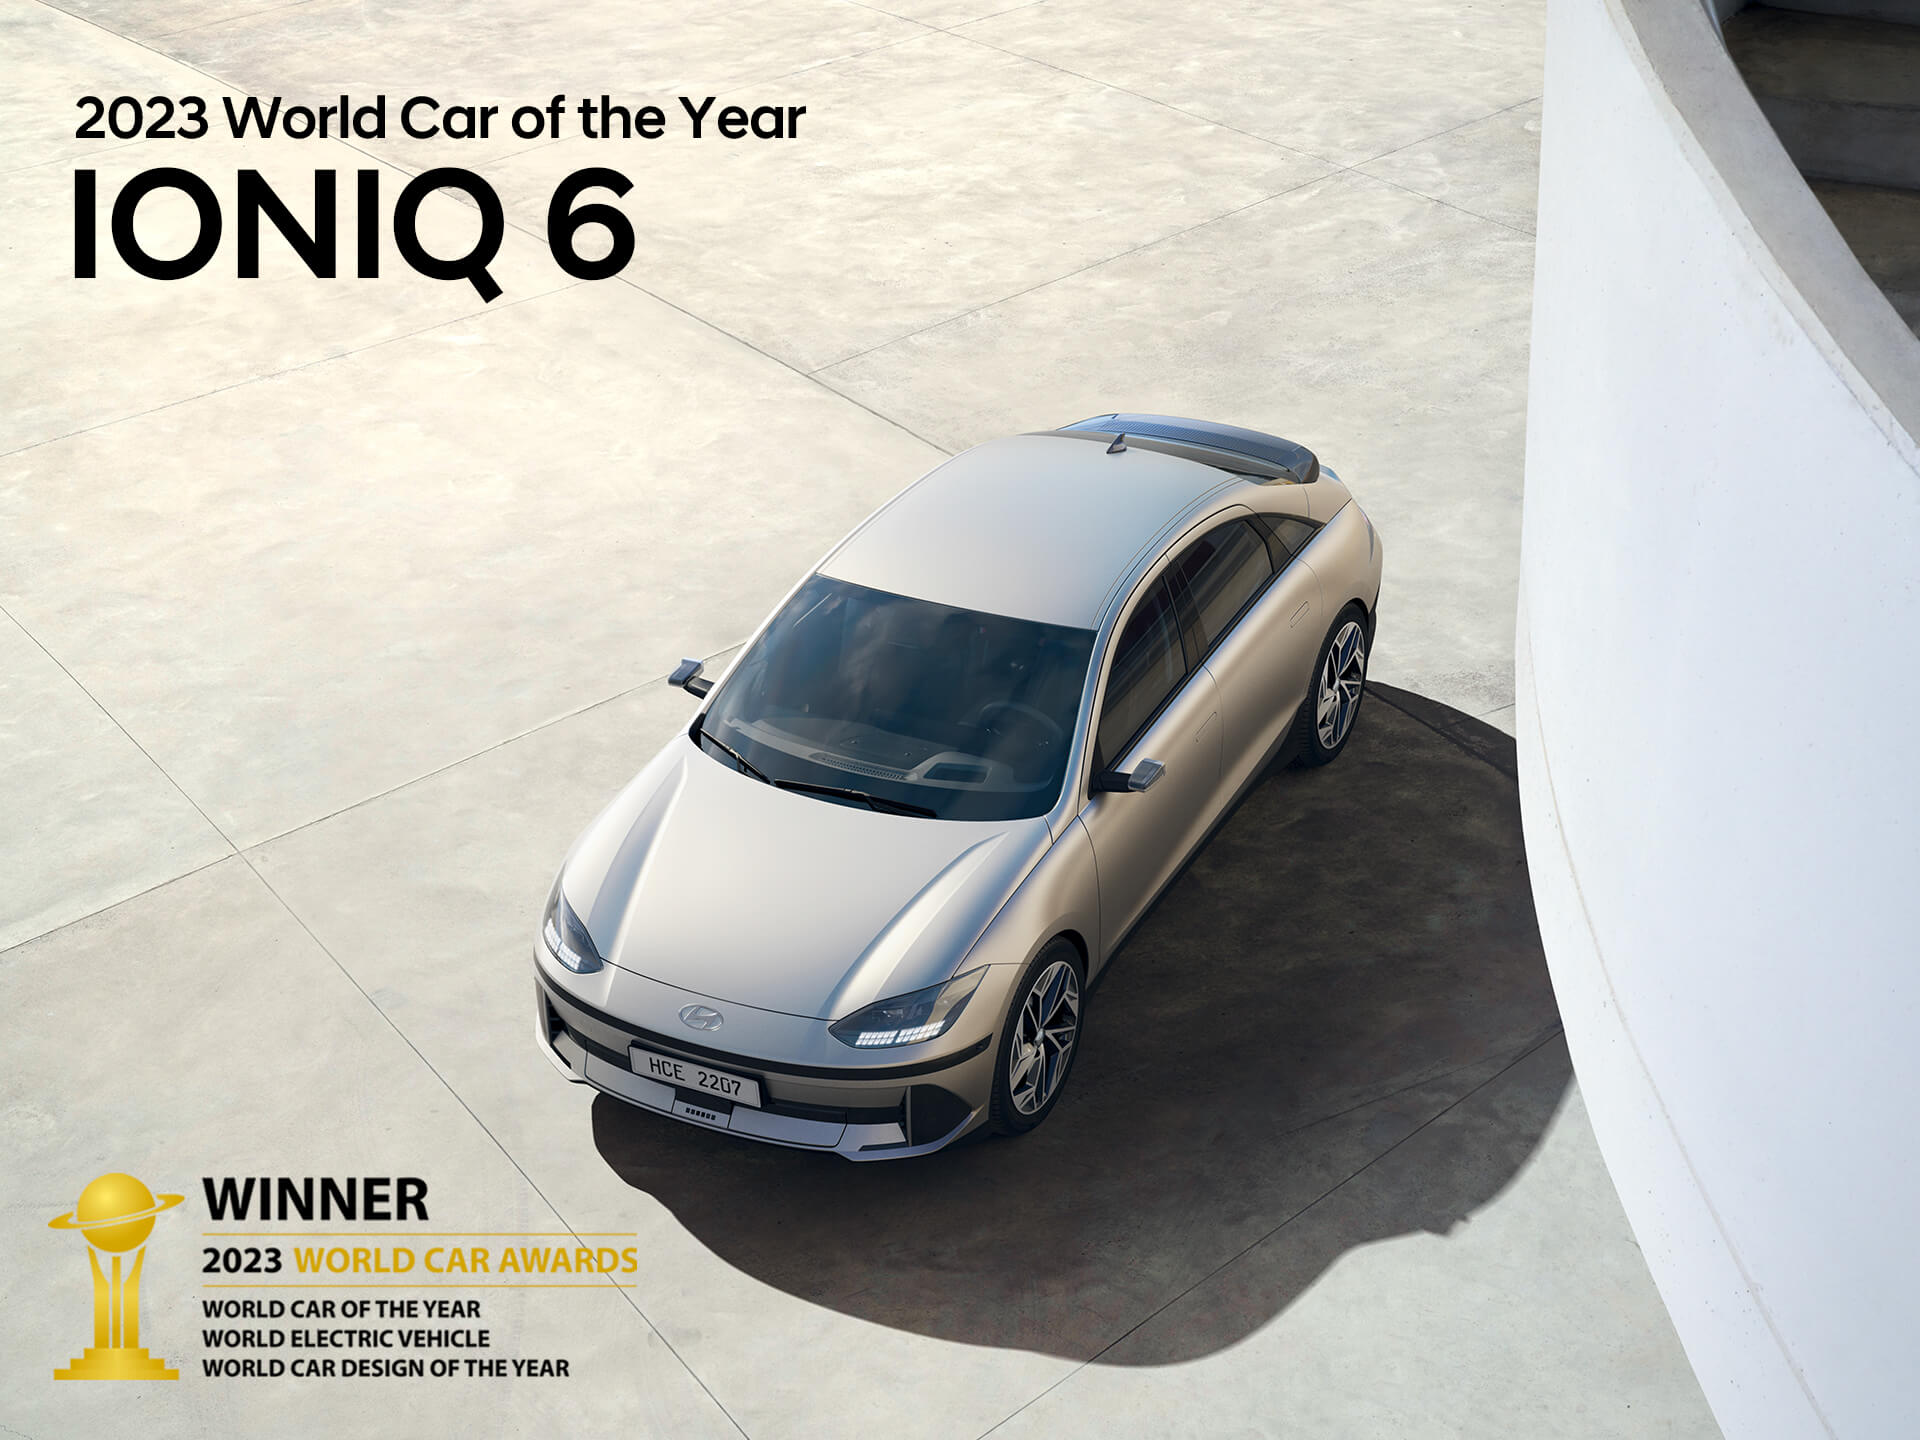 Електричний стрімлайнер Hyundai IONIQ 6 отримав престижні нагороди: Всесвітній автомобіль року, Всесвітній електромобіль року і Найкращий автомобільний дизайн року